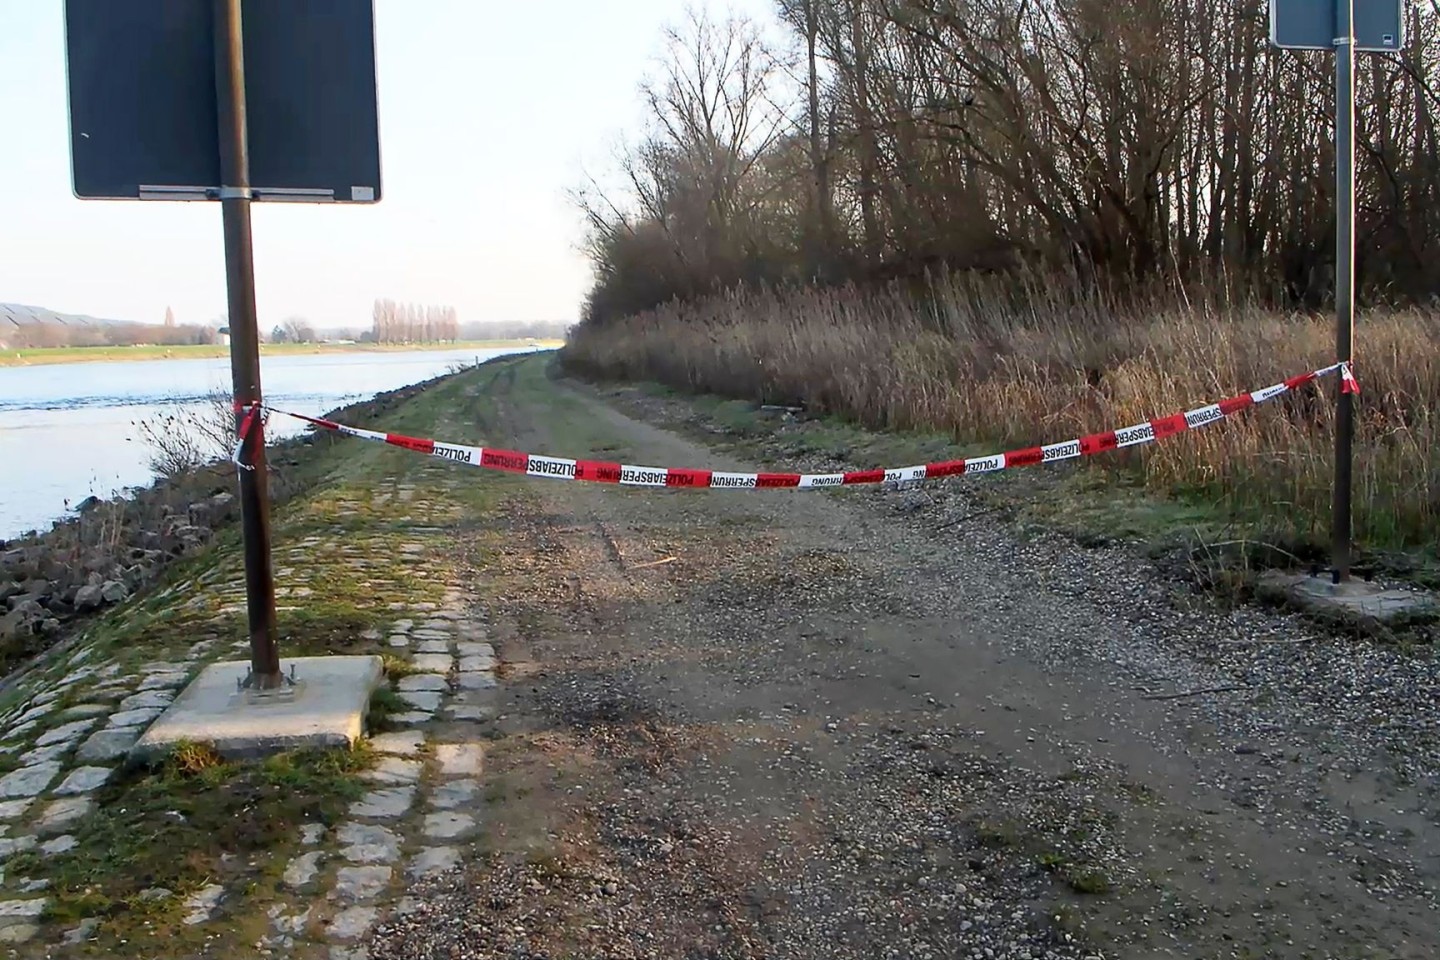 Am Rheinufer sind in den vergangenen Wochen zwei Leichen gefunden worden. Die Polizei ermittelt gegen ein tatverdächtiges Ehepaar.